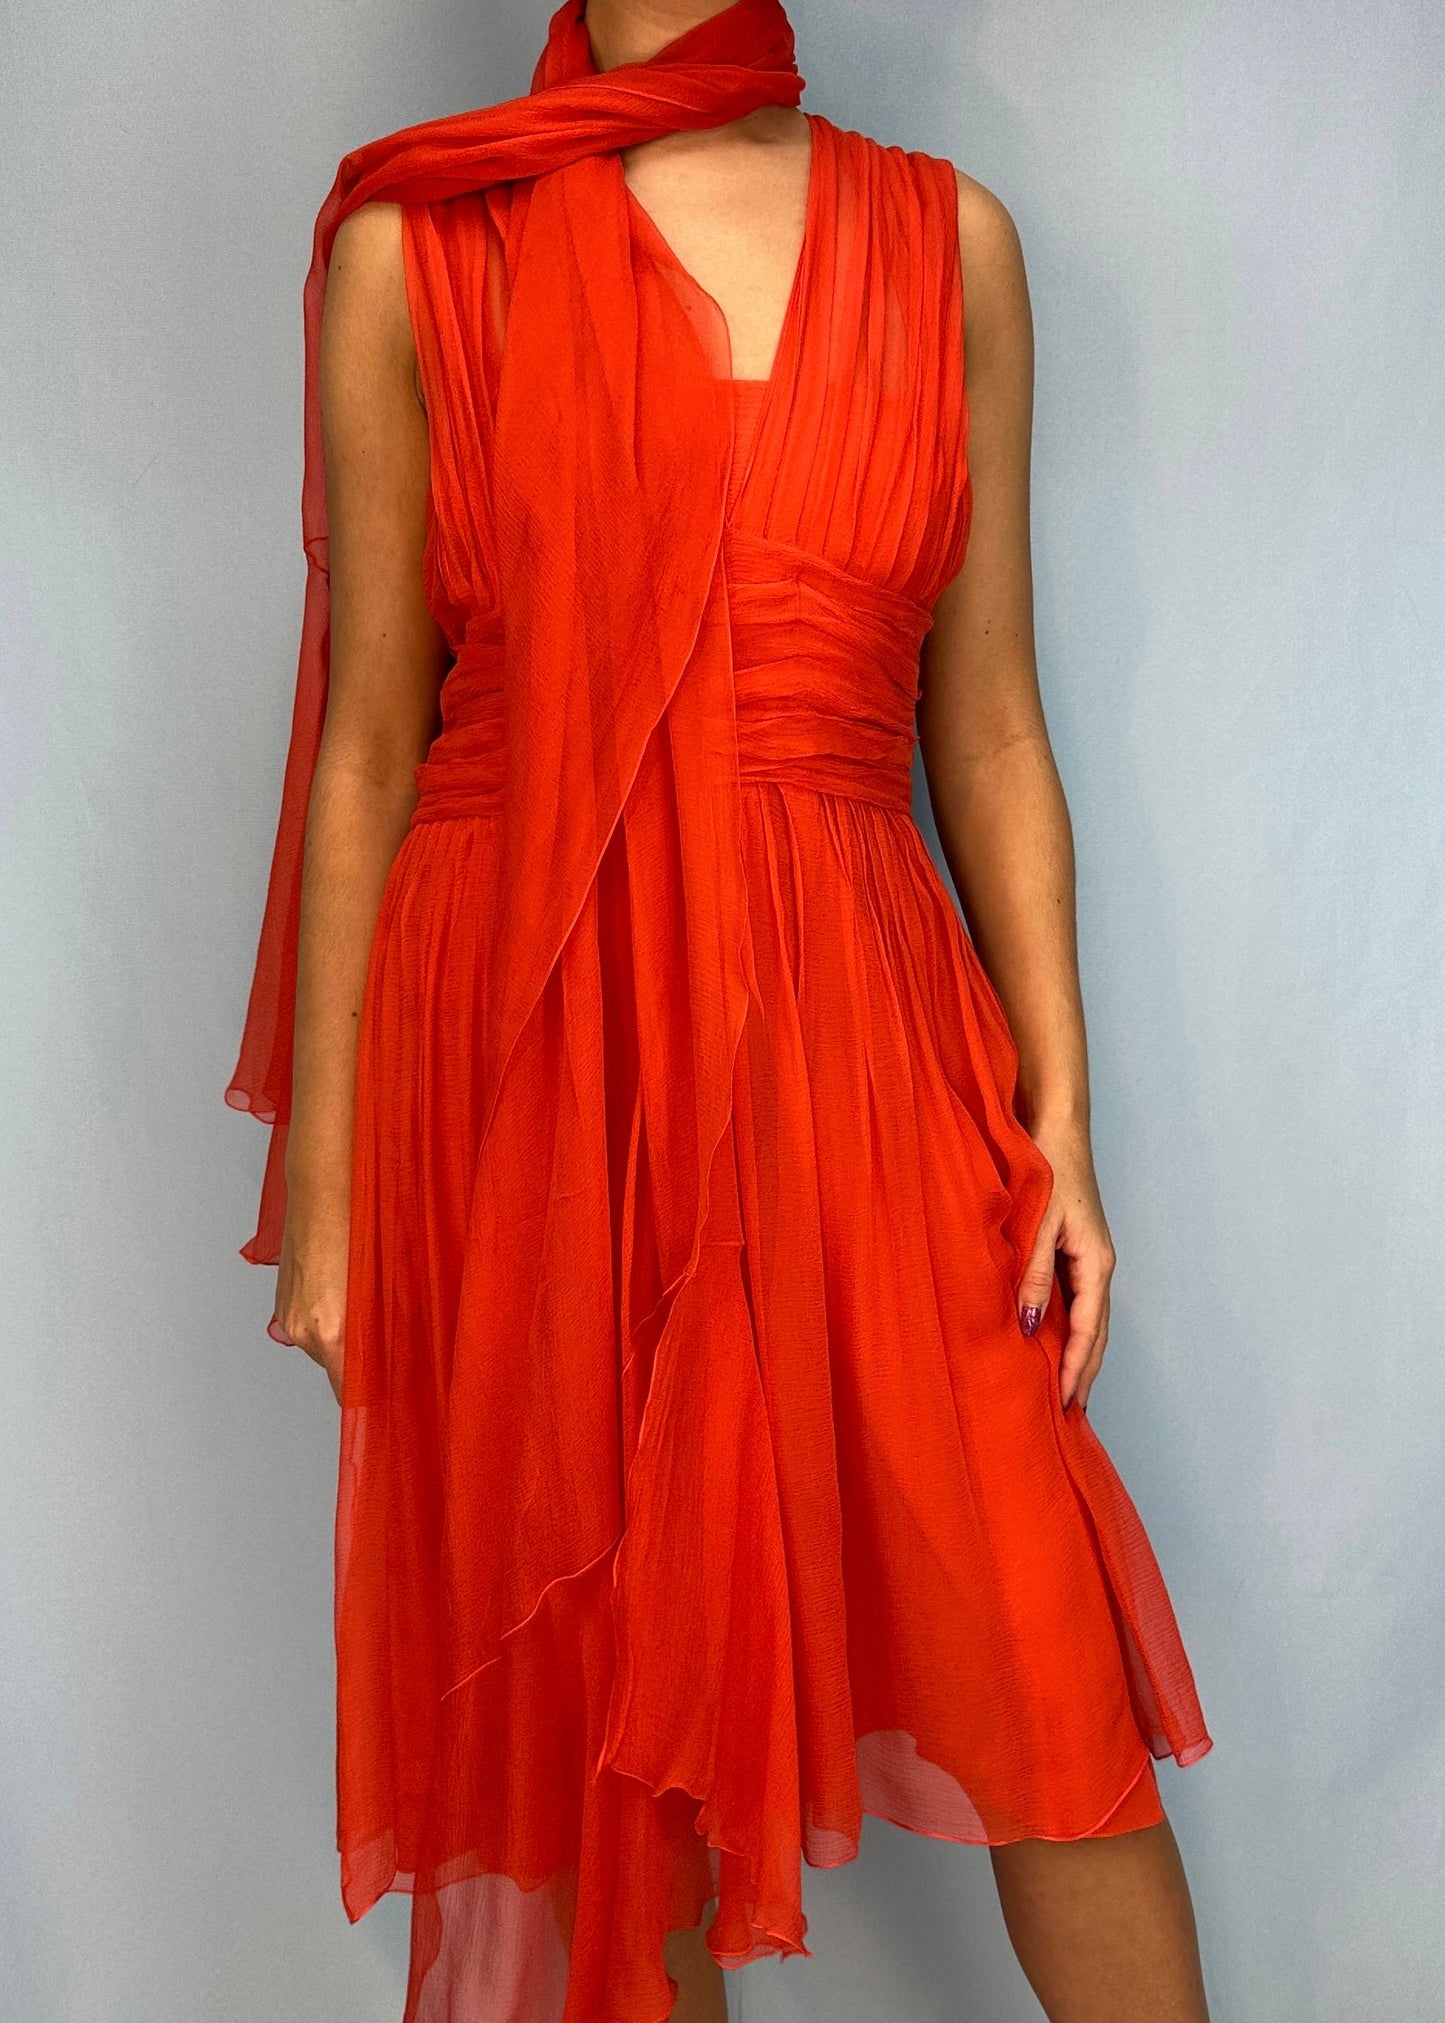 Dior Fall 2007 Orange Silk Chiffon Dress & Scarf